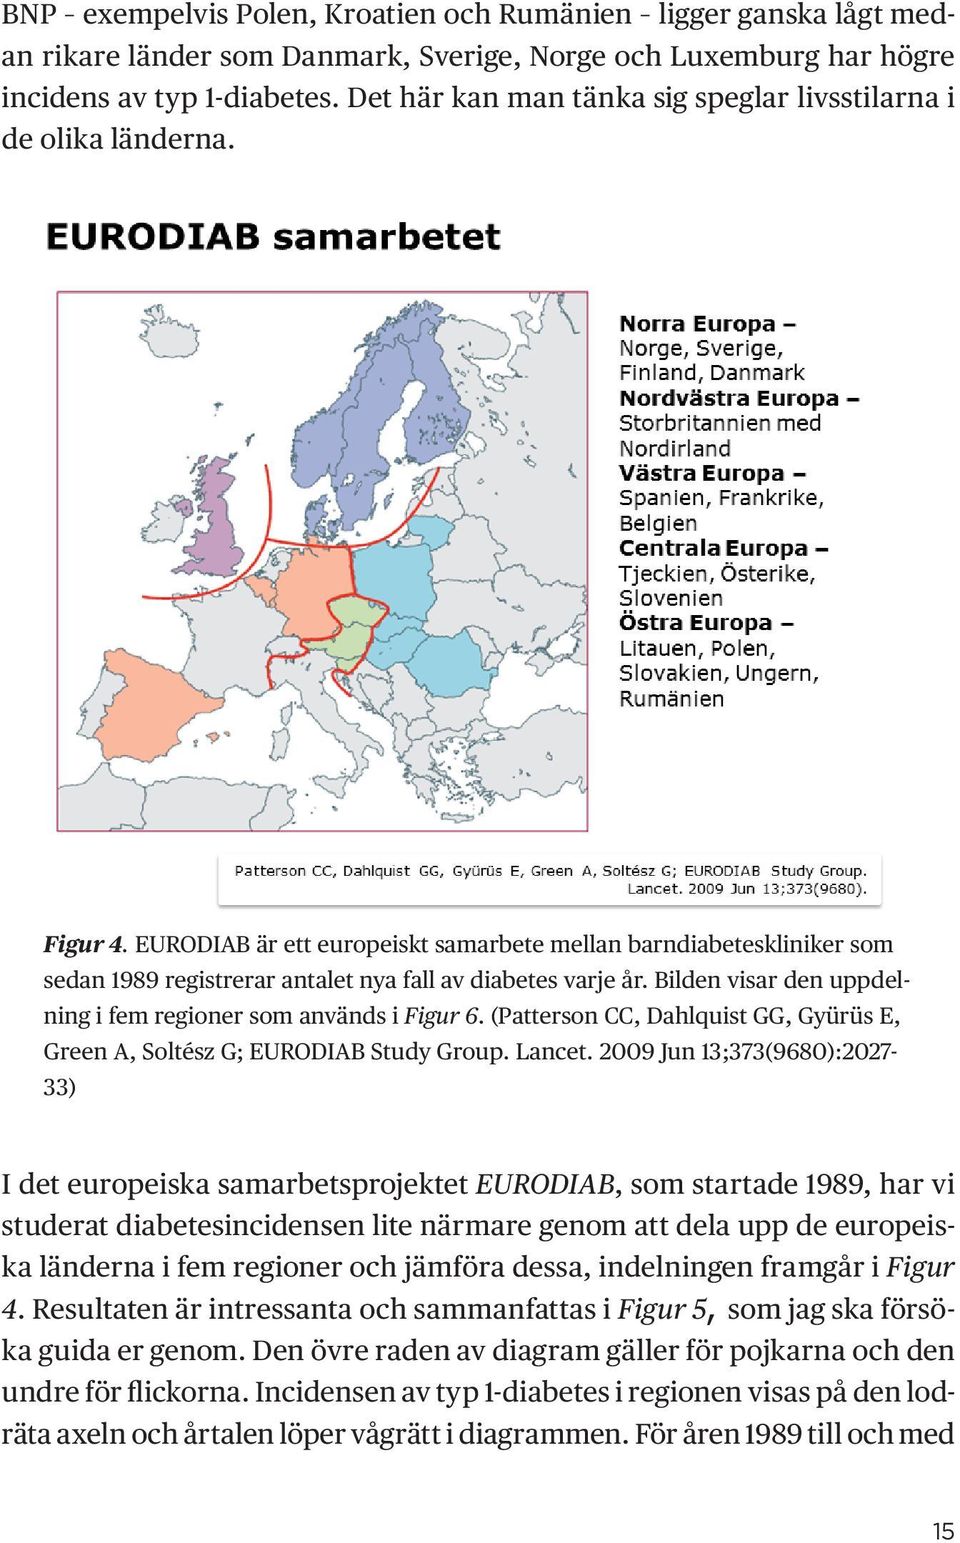 EURODIAB är ett europeiskt samarbete mellan barndiabeteskliniker som sedan 1989 registrerar antalet nya fall av diabetes varje år. Bilden visar den uppdelning i fem regioner som används i Figur 6.